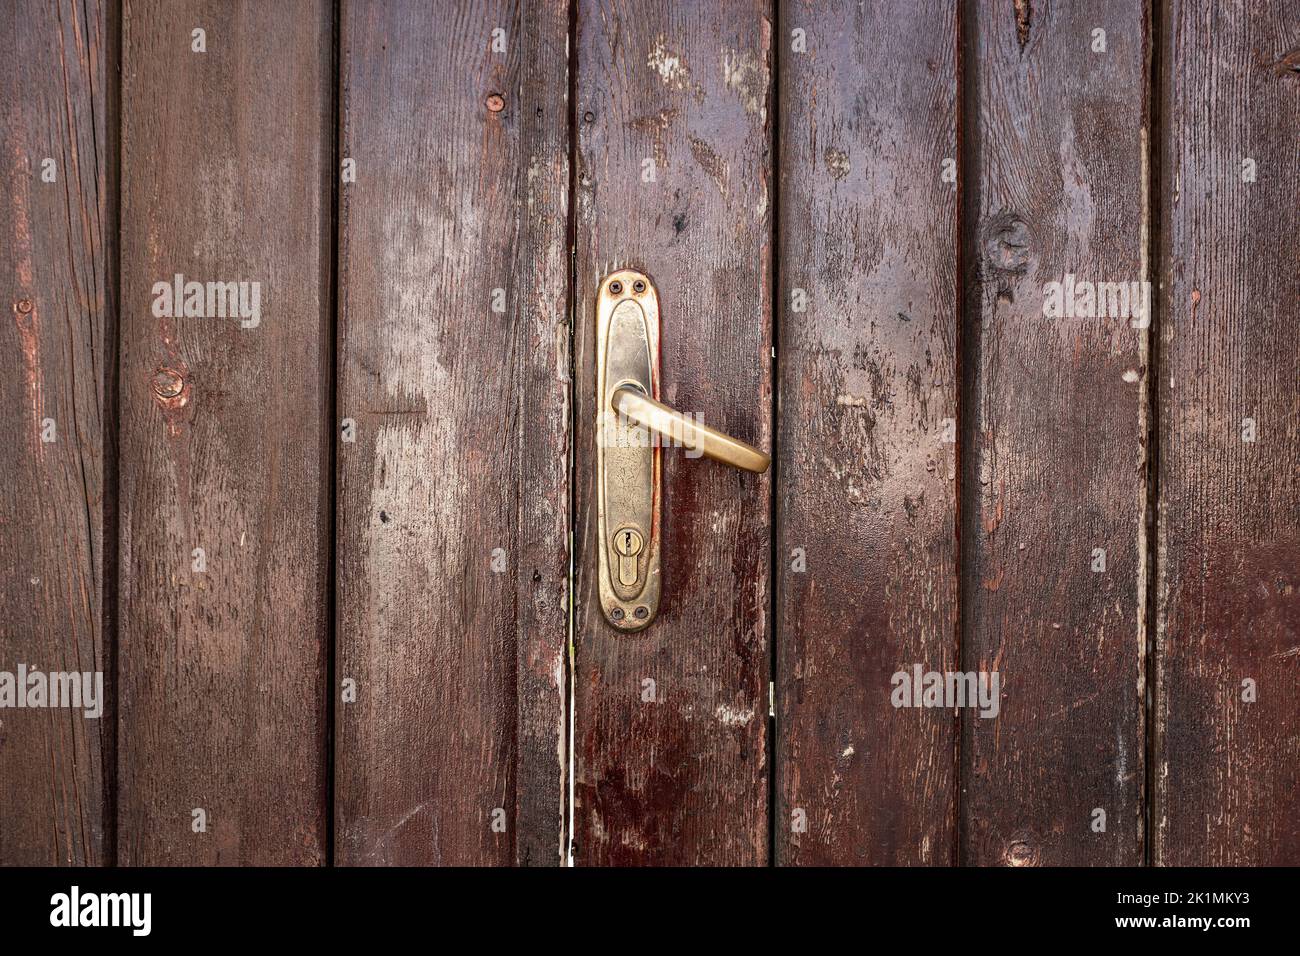 Ancienne porte en bois classique, marron, avec poignée en fer. Textures et arrière-plan de la porte. Photo de haute qualité Banque D'Images